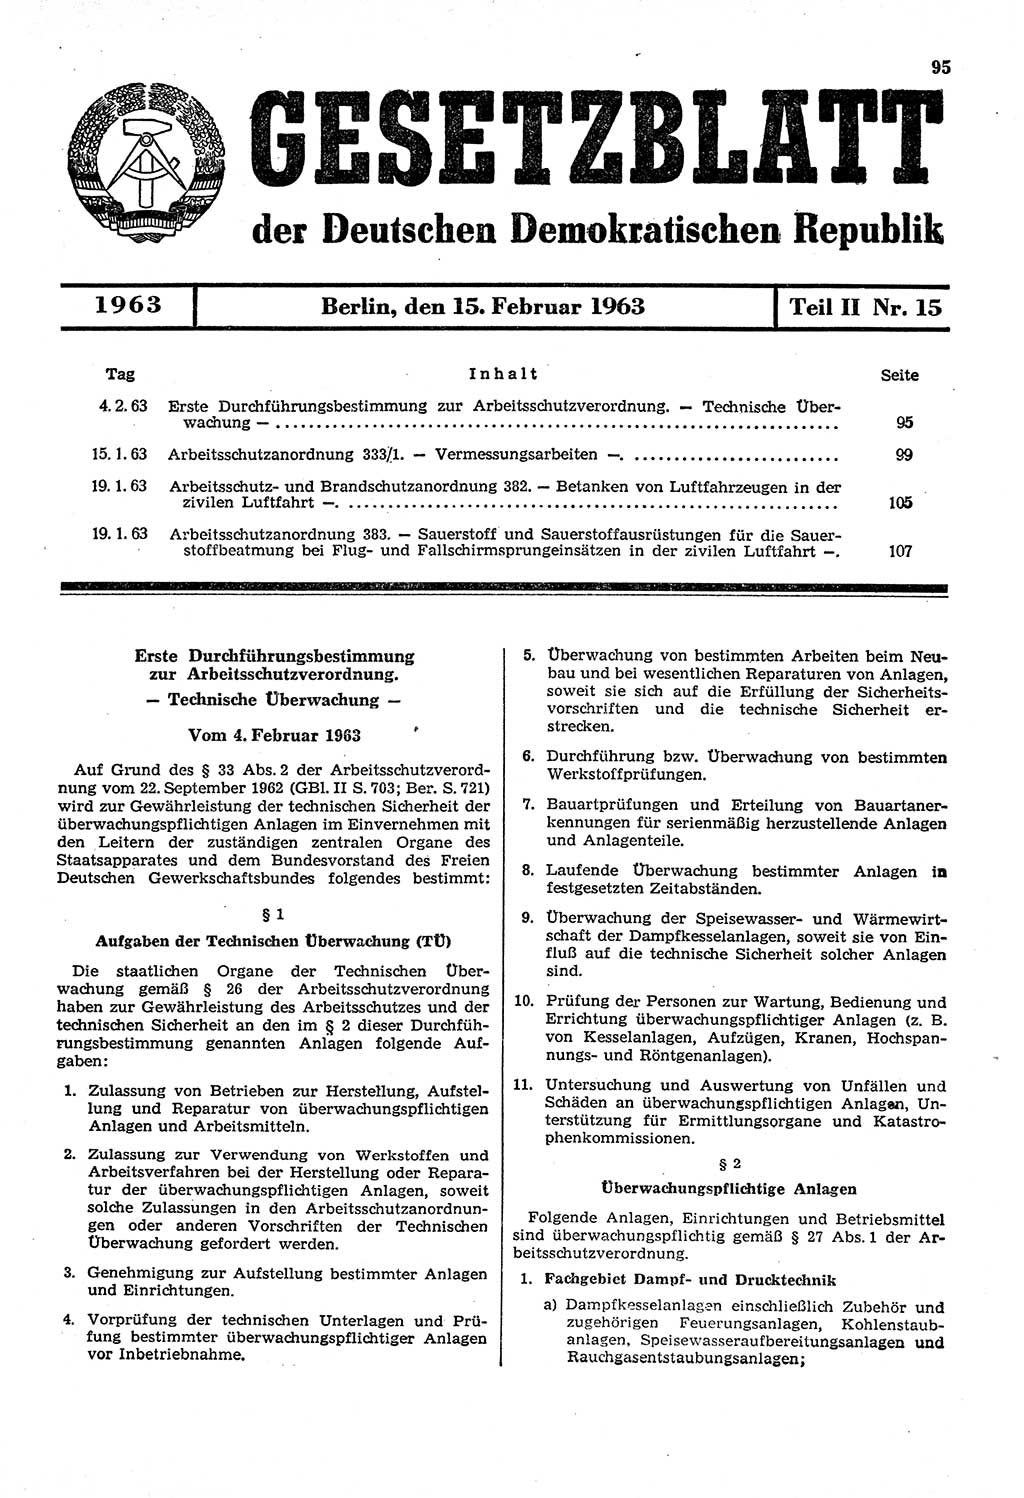 Gesetzblatt (GBl.) der Deutschen Demokratischen Republik (DDR) Teil ⅠⅠ 1963, Seite 95 (GBl. DDR ⅠⅠ 1963, S. 95)